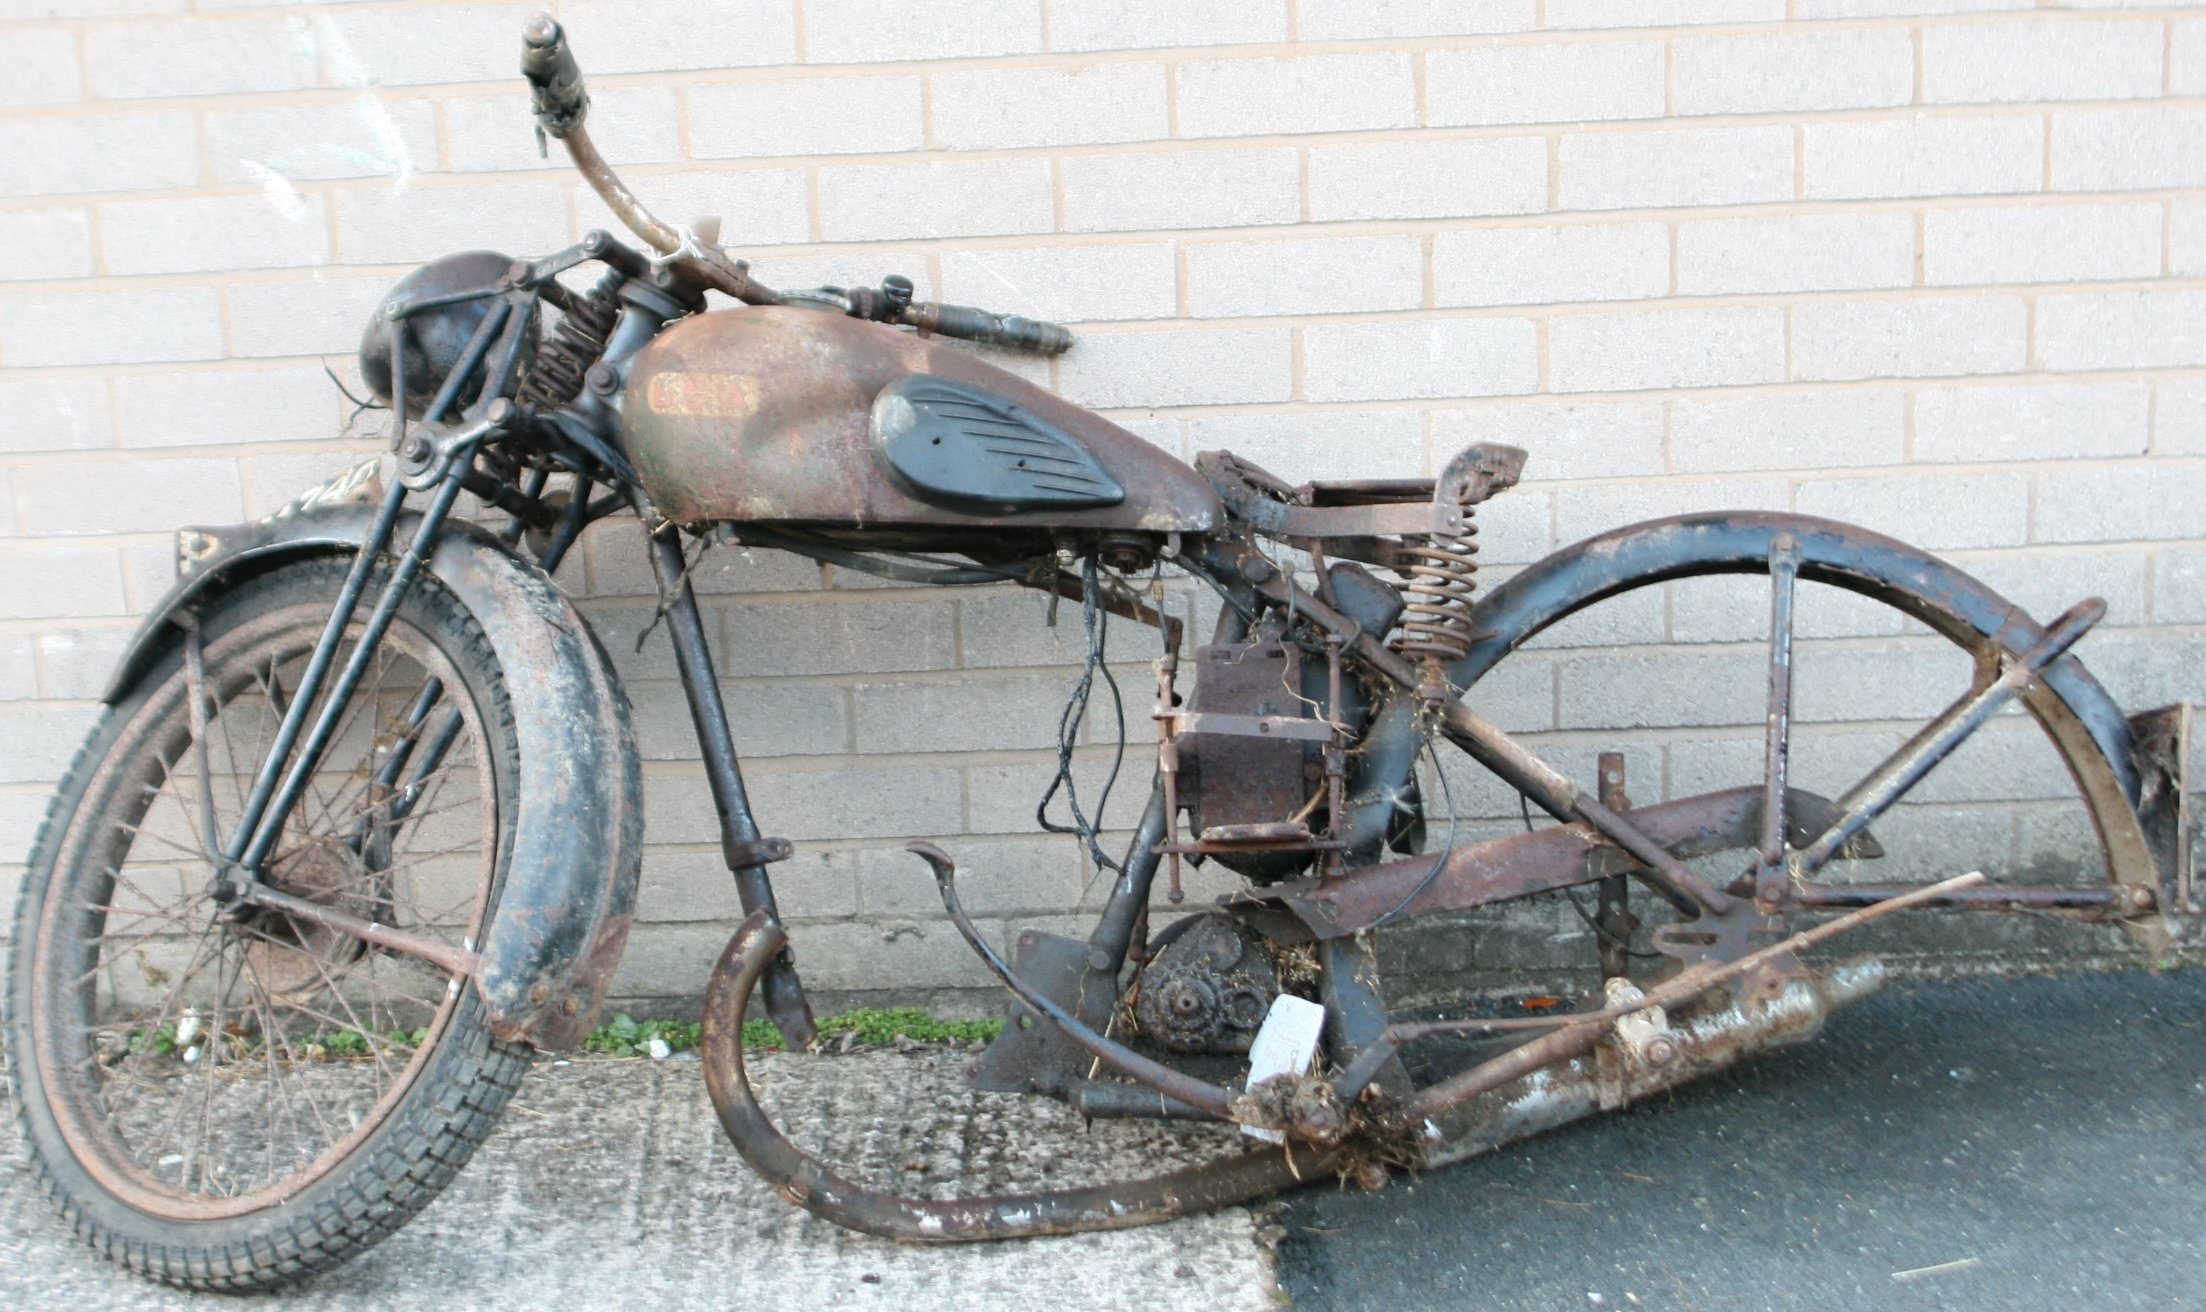 A 1930S BSA MOTORCYCLE FRAME FRAME NUMBER 5-4099. REG BRM740 NO V5 DOCUMENT